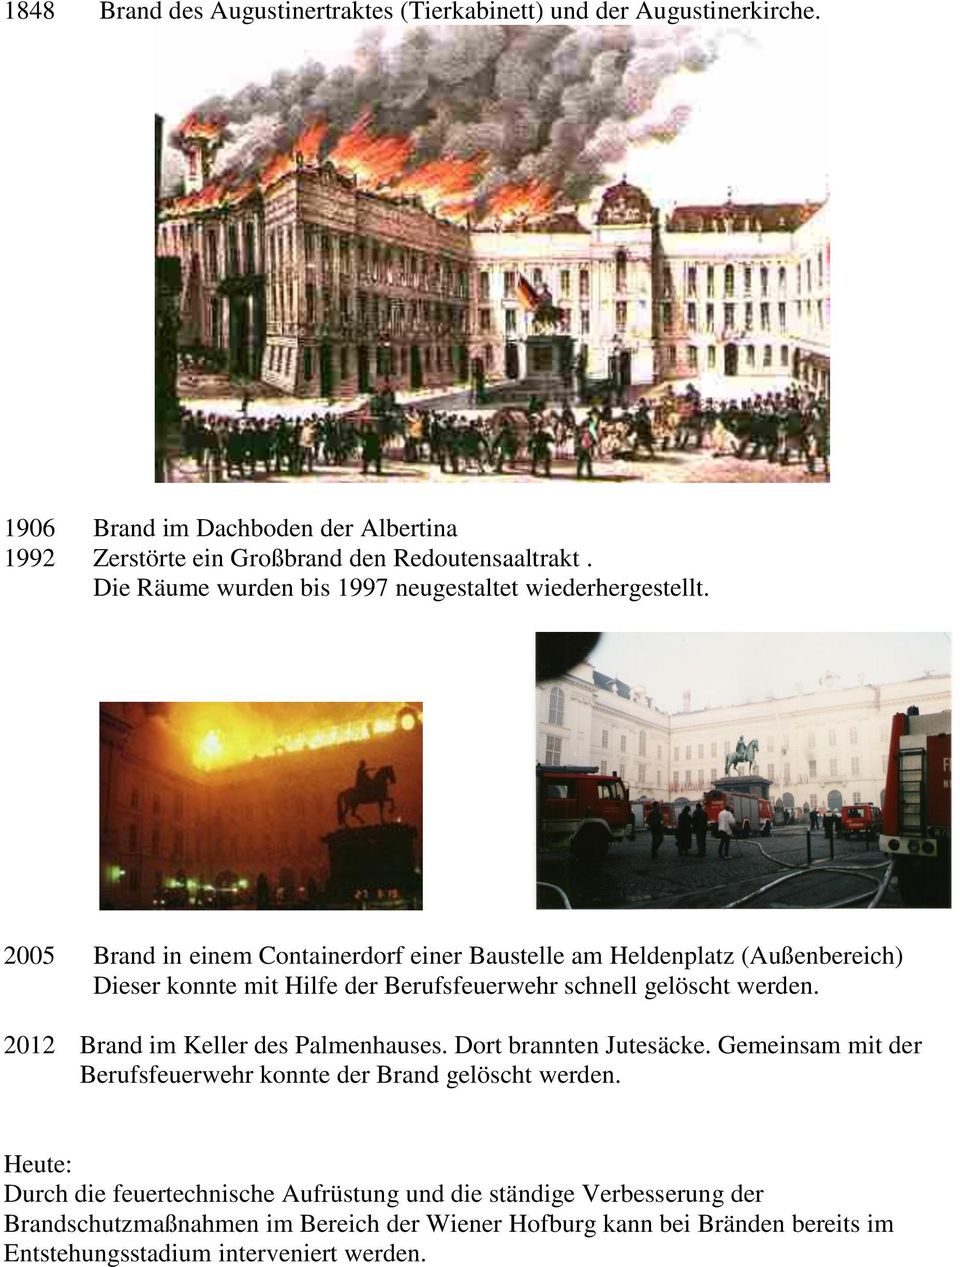 2005 Brand in einem Containerdorf einer Baustelle am Heldenplatz (Außenbereich) Dieser konnte mit Hilfe der Berufsfeuerwehr schnell gelöscht werden.